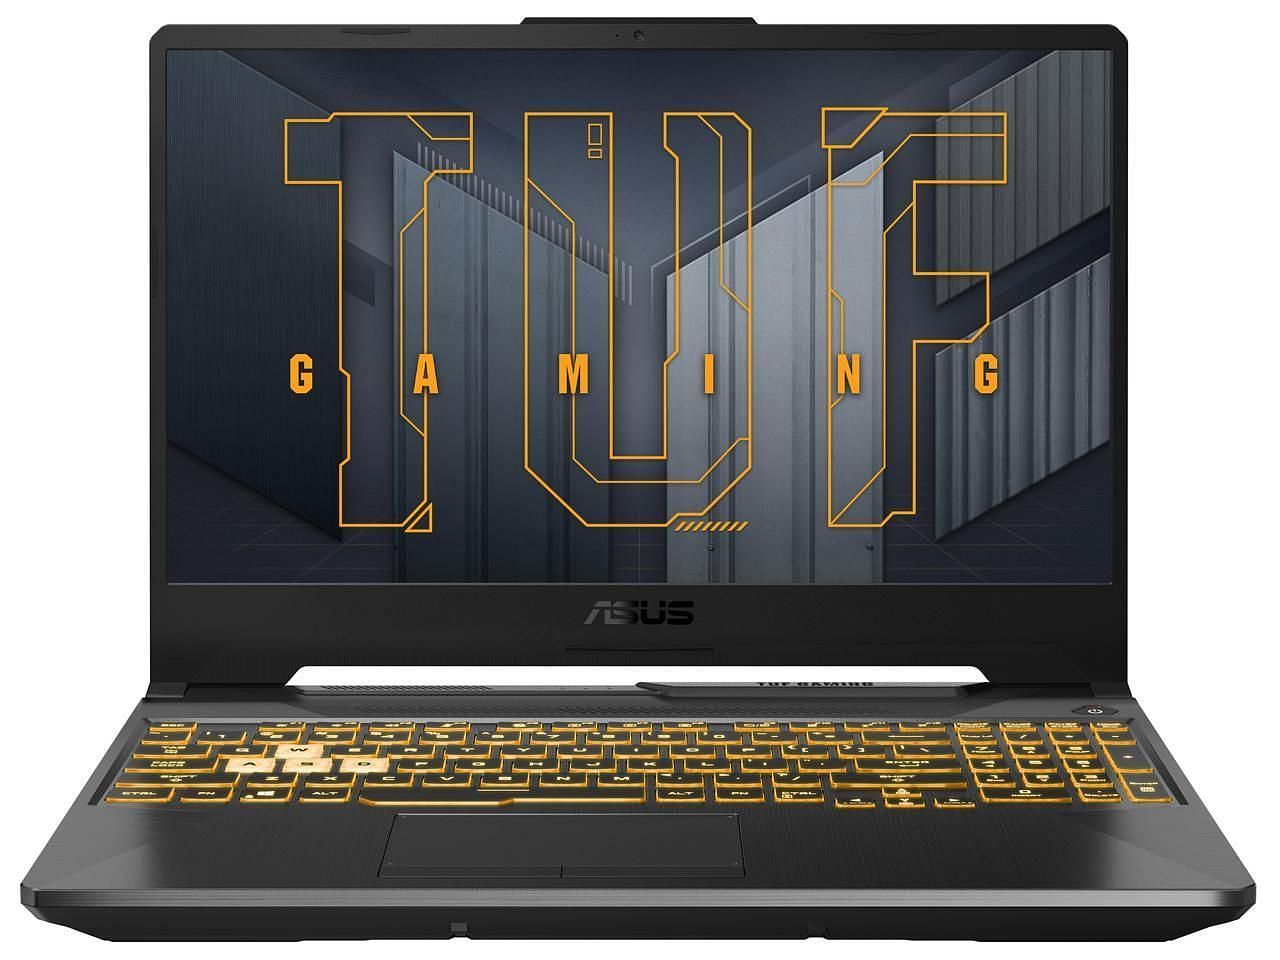 The ASUS TUF Gaming F15 Gaming Laptop (Image via Newegg)